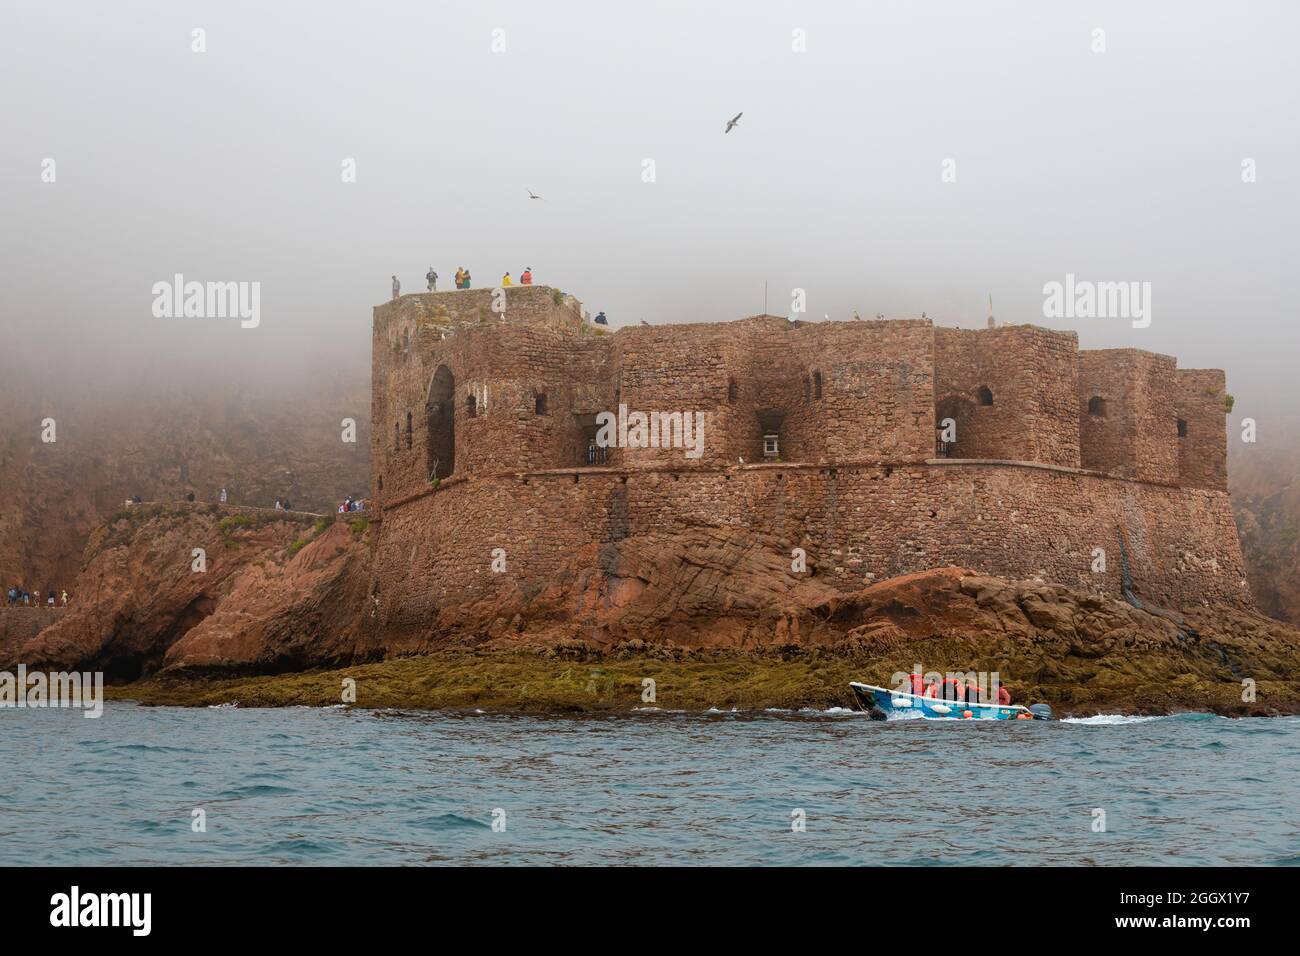 Festung von St. Johannes dem Täufer auf der Berlenga Grande Insel, der größten Insel des Berlengas Archipels, vor der Küste von Peniche, Portugal. Stockfoto